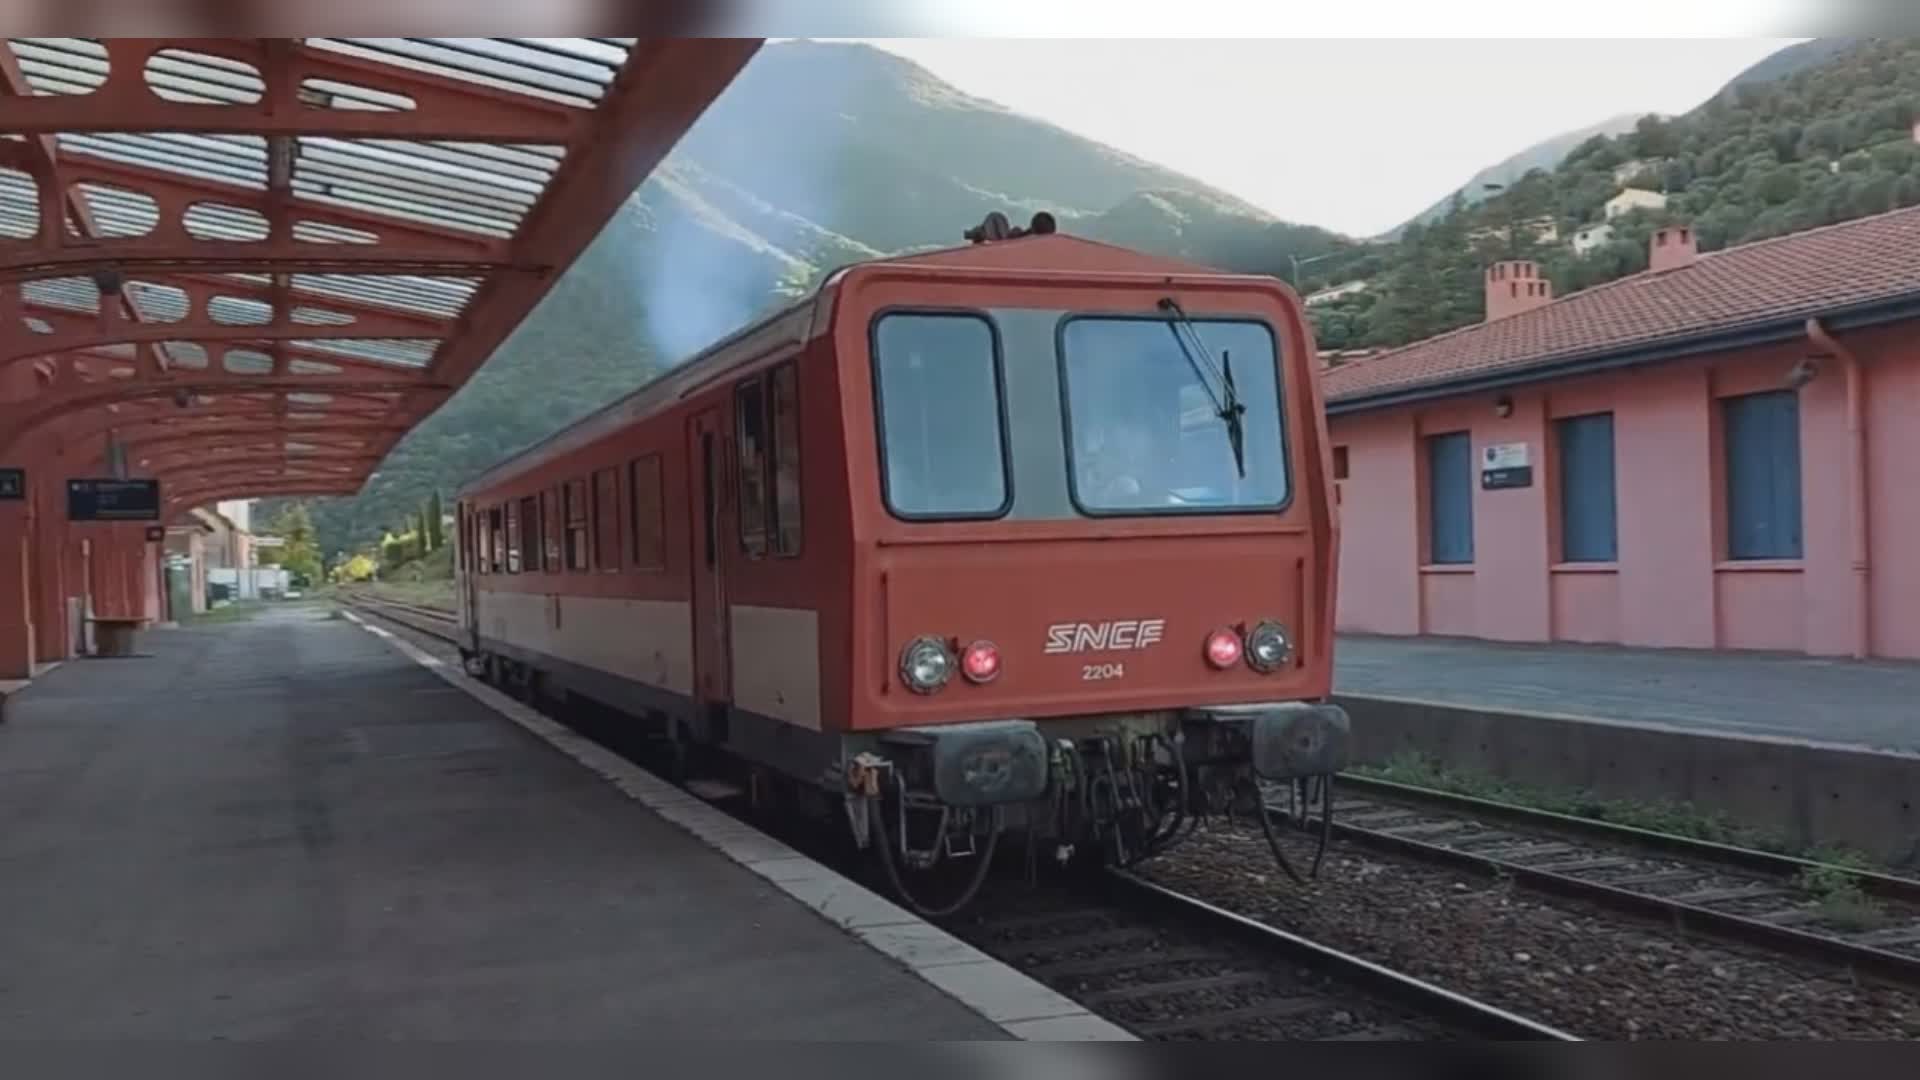 Maltempo: rischio frana in territorio francese, circolazione interrotta sulla ferrovia Ventimiglia-Cuneo